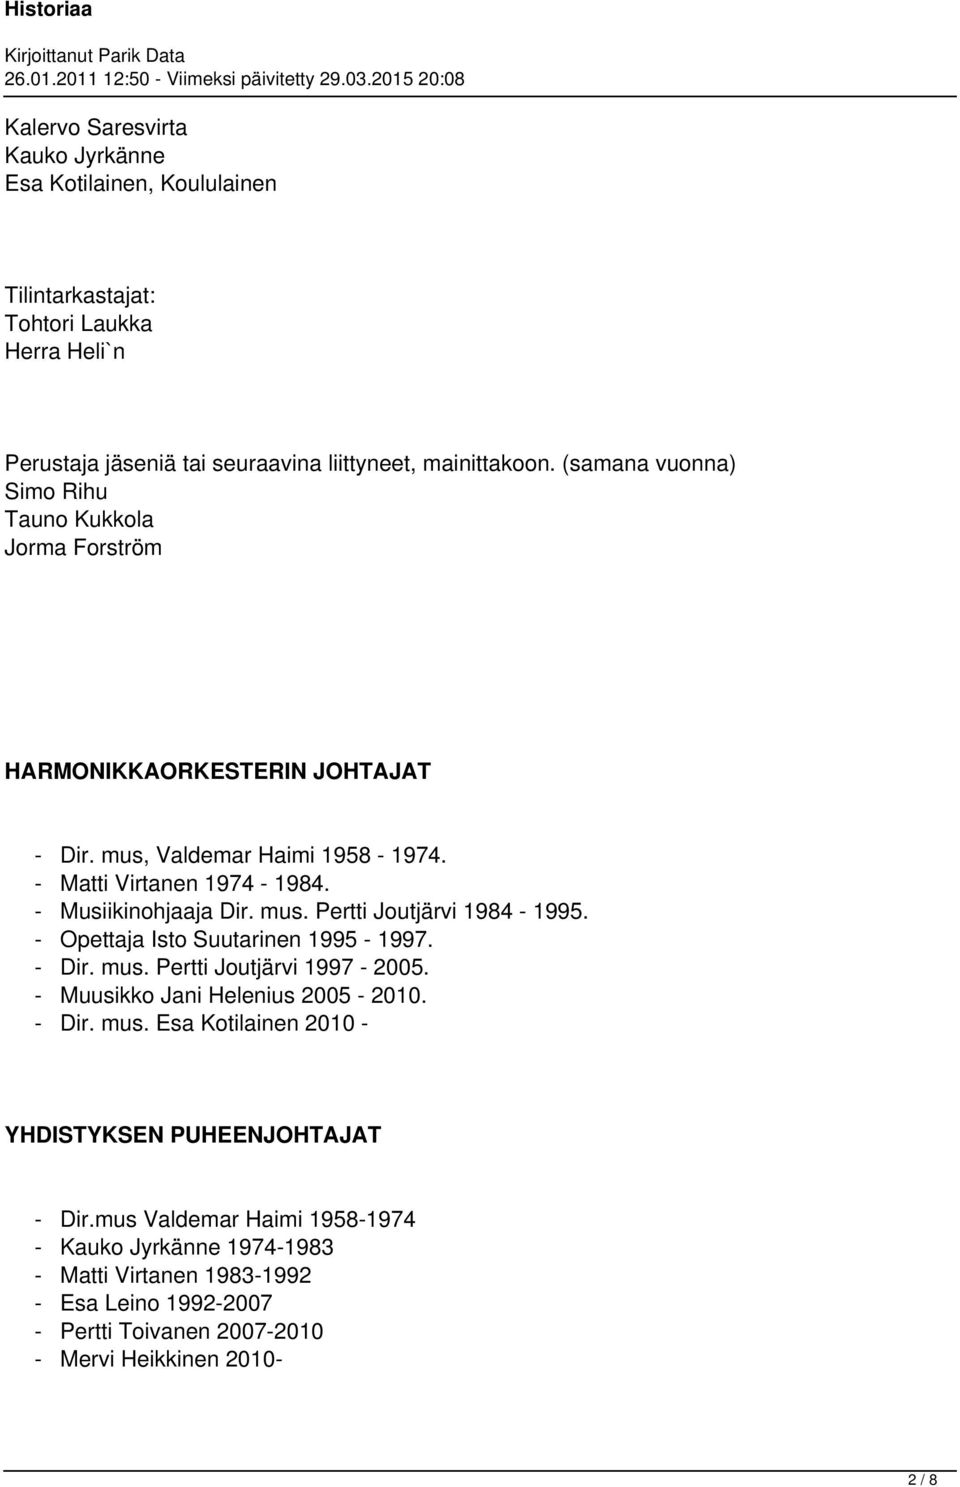 mus. Pertti Joutjärvi 1984-1995. Opettaja Isto Suutarinen 1995-1997. Dir. mus. Pertti Joutjärvi 1997-2005. Muusikko Jani Helenius 2005-2010. Dir. mus. Esa Kotilainen 2010 - YHDISTYKSEN PUHEENJOHTAJAT - Dir.